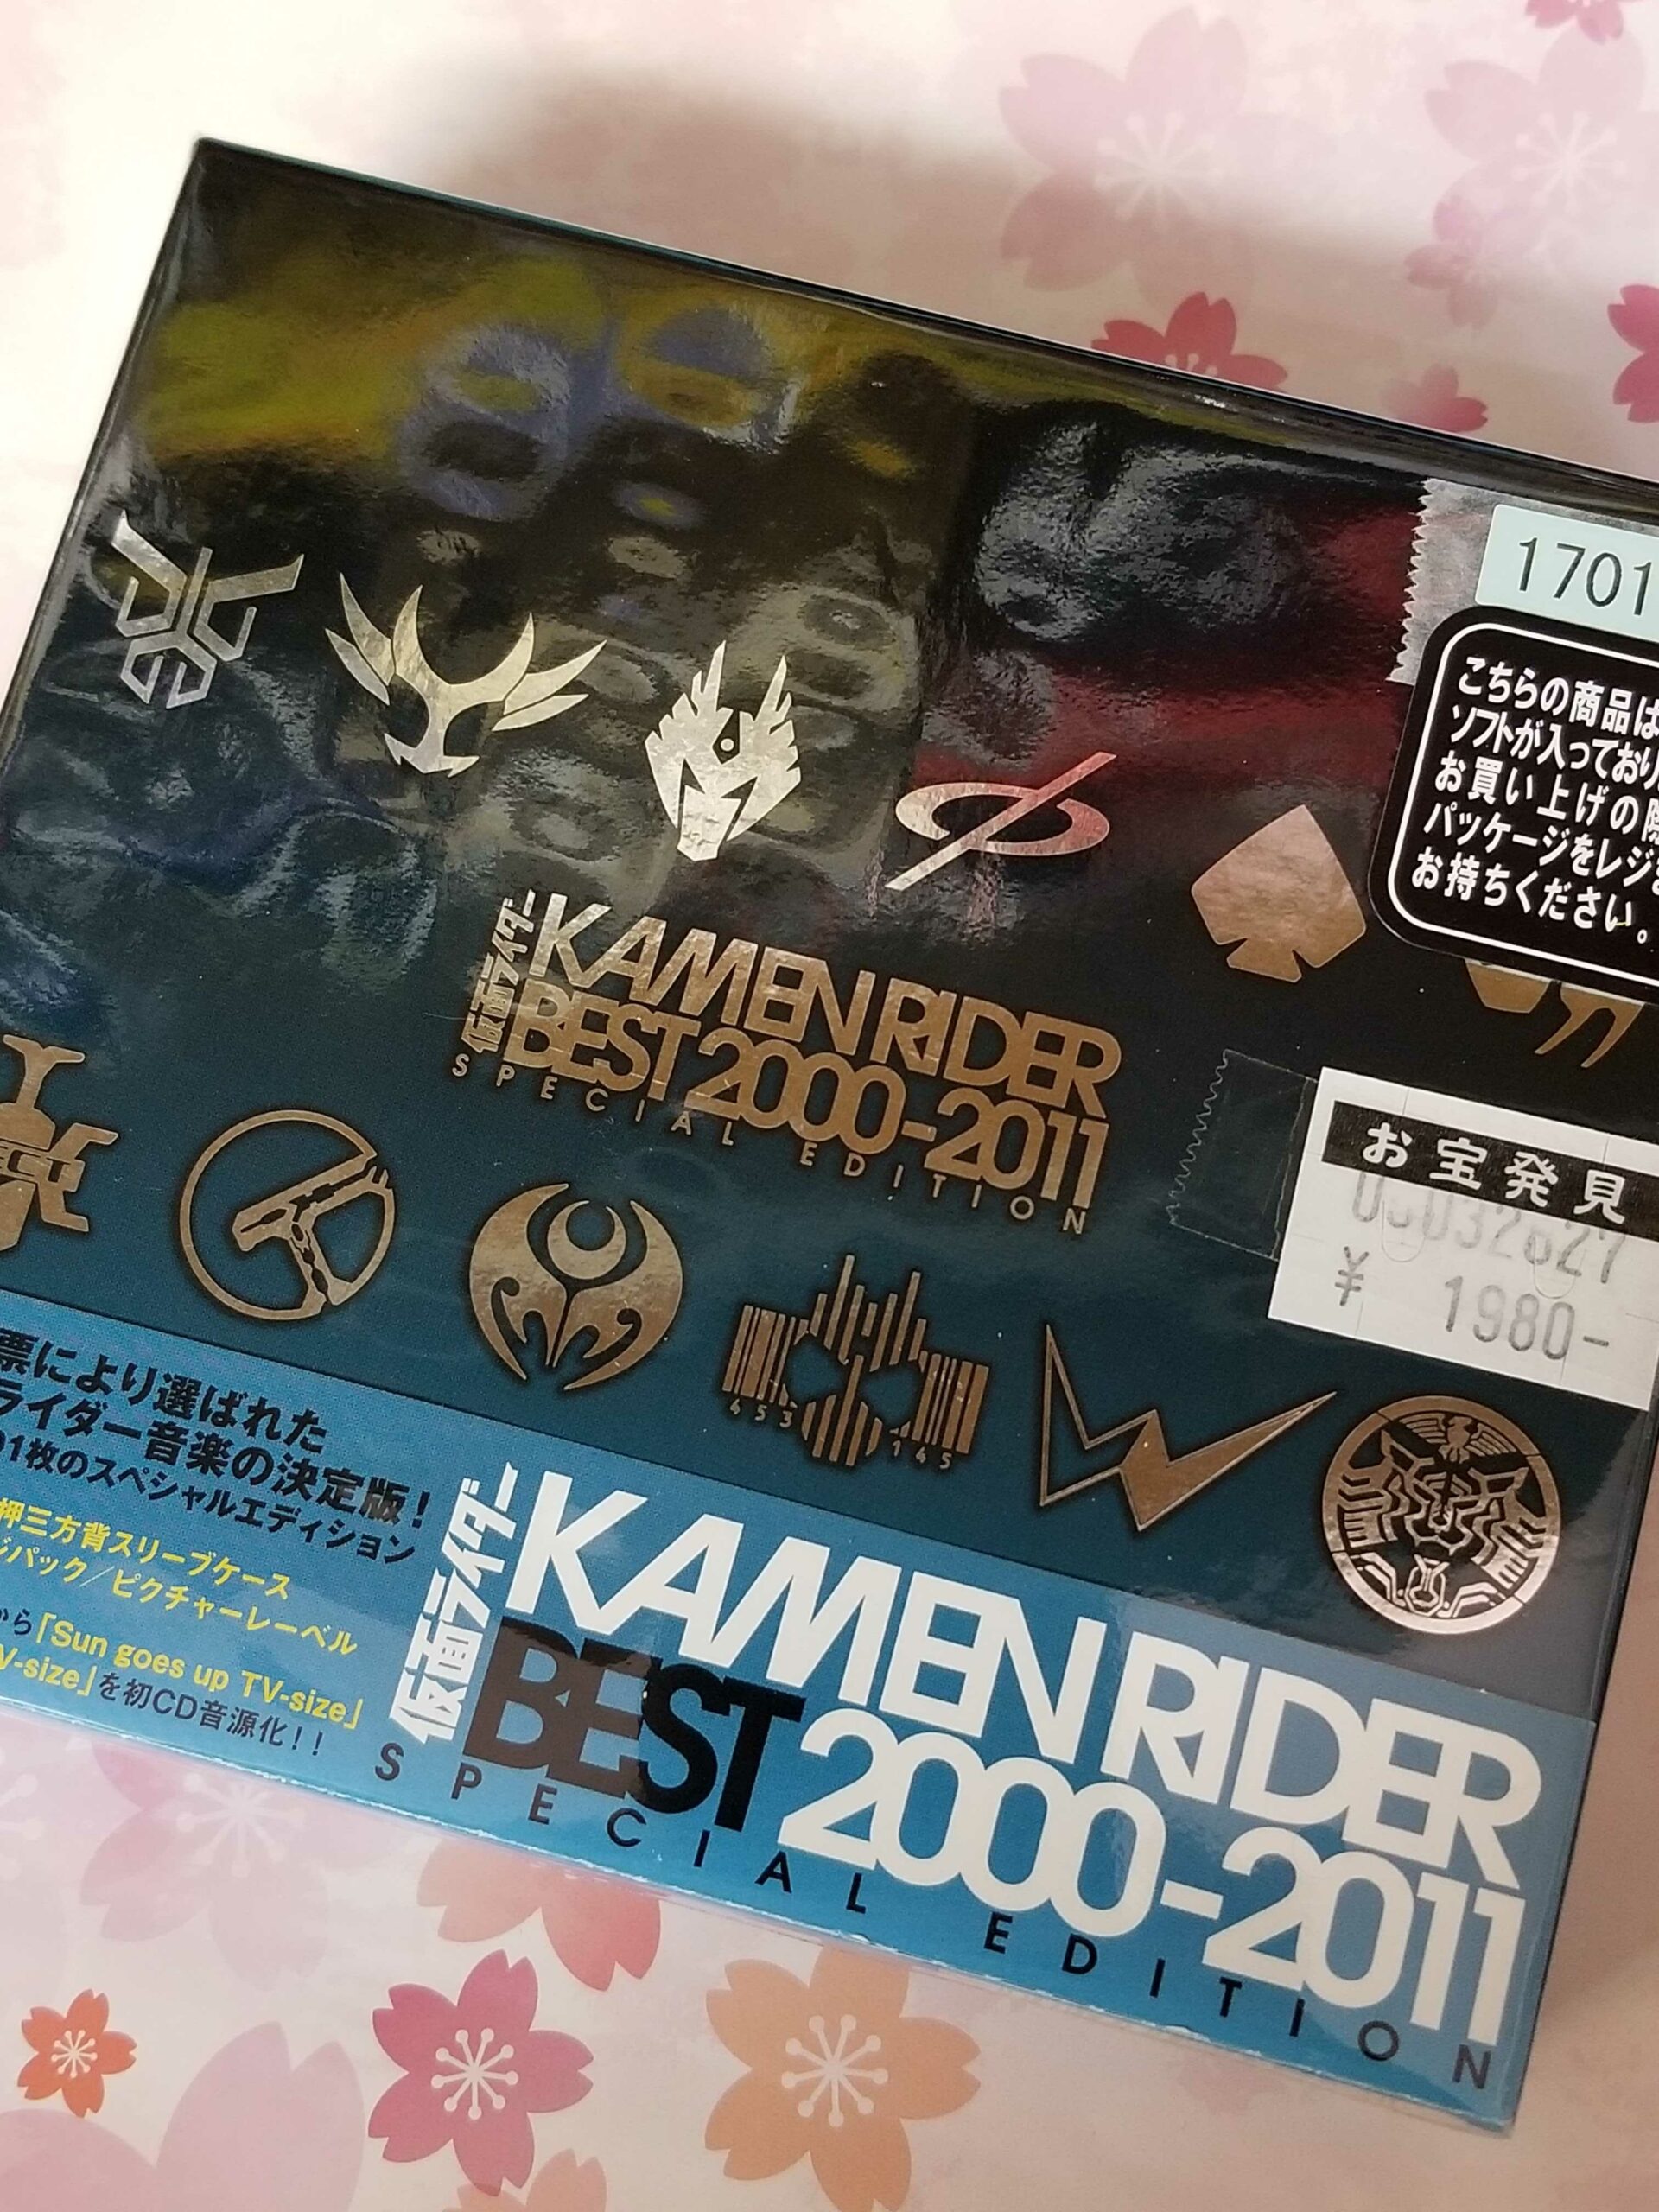 音楽映像コーナーより！ CDアルバム 仮面ライダー KAMEN RIDER BEST 2000-2011 入荷！ - マンガ倉庫久留米店